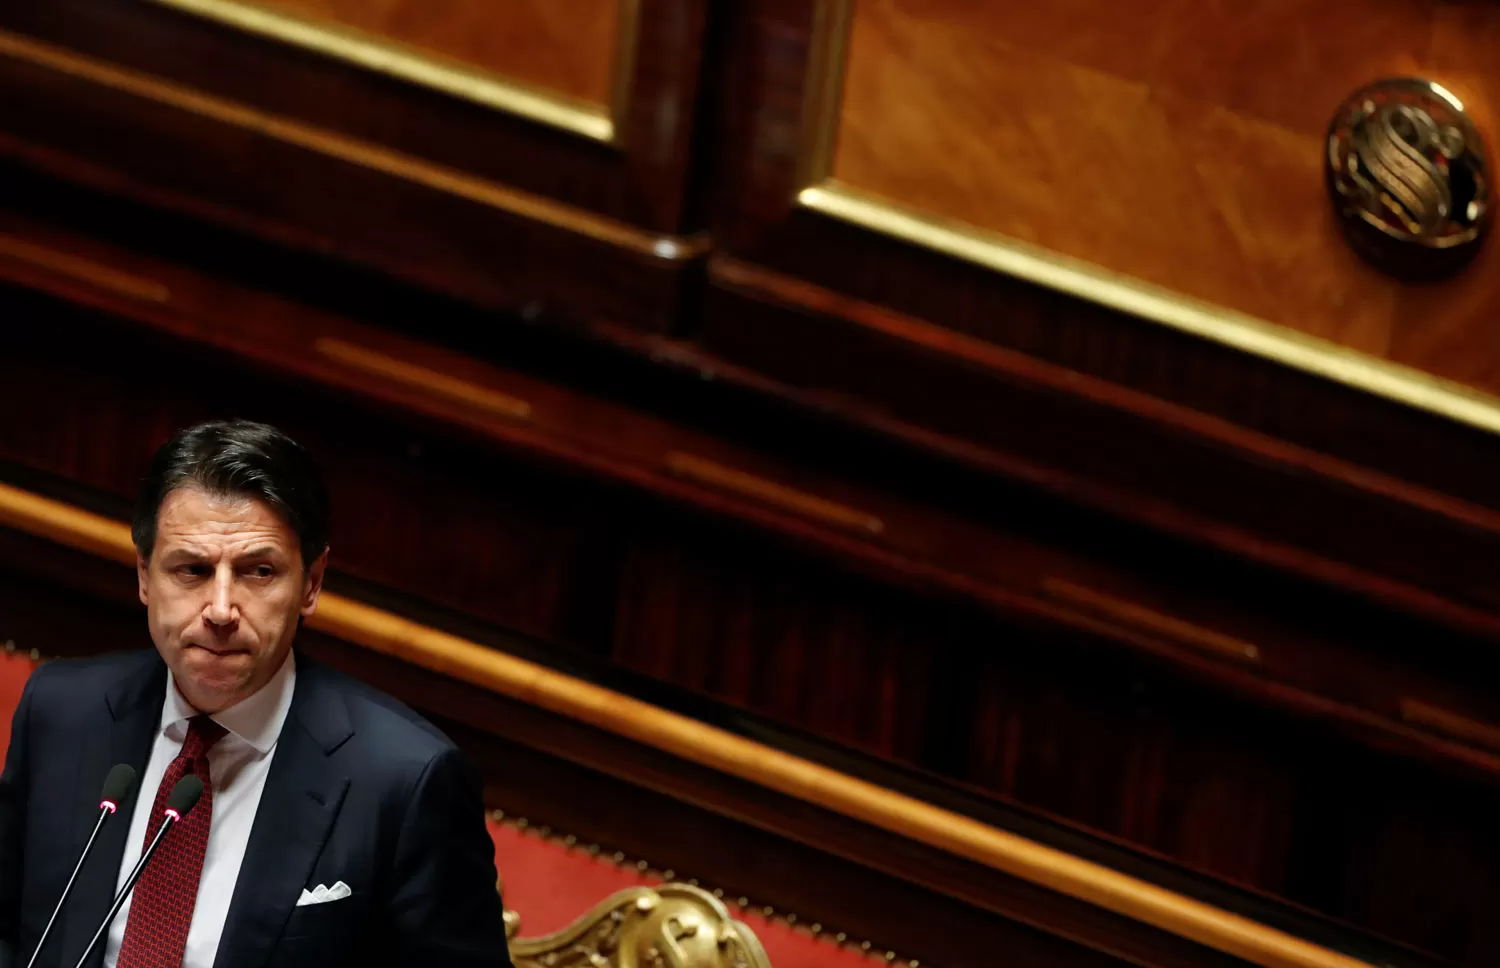 DIMISIÓN. Conte decidió renunciar al cargo de Primera Ministro de Italia. Acusa un boicot. REUTERS